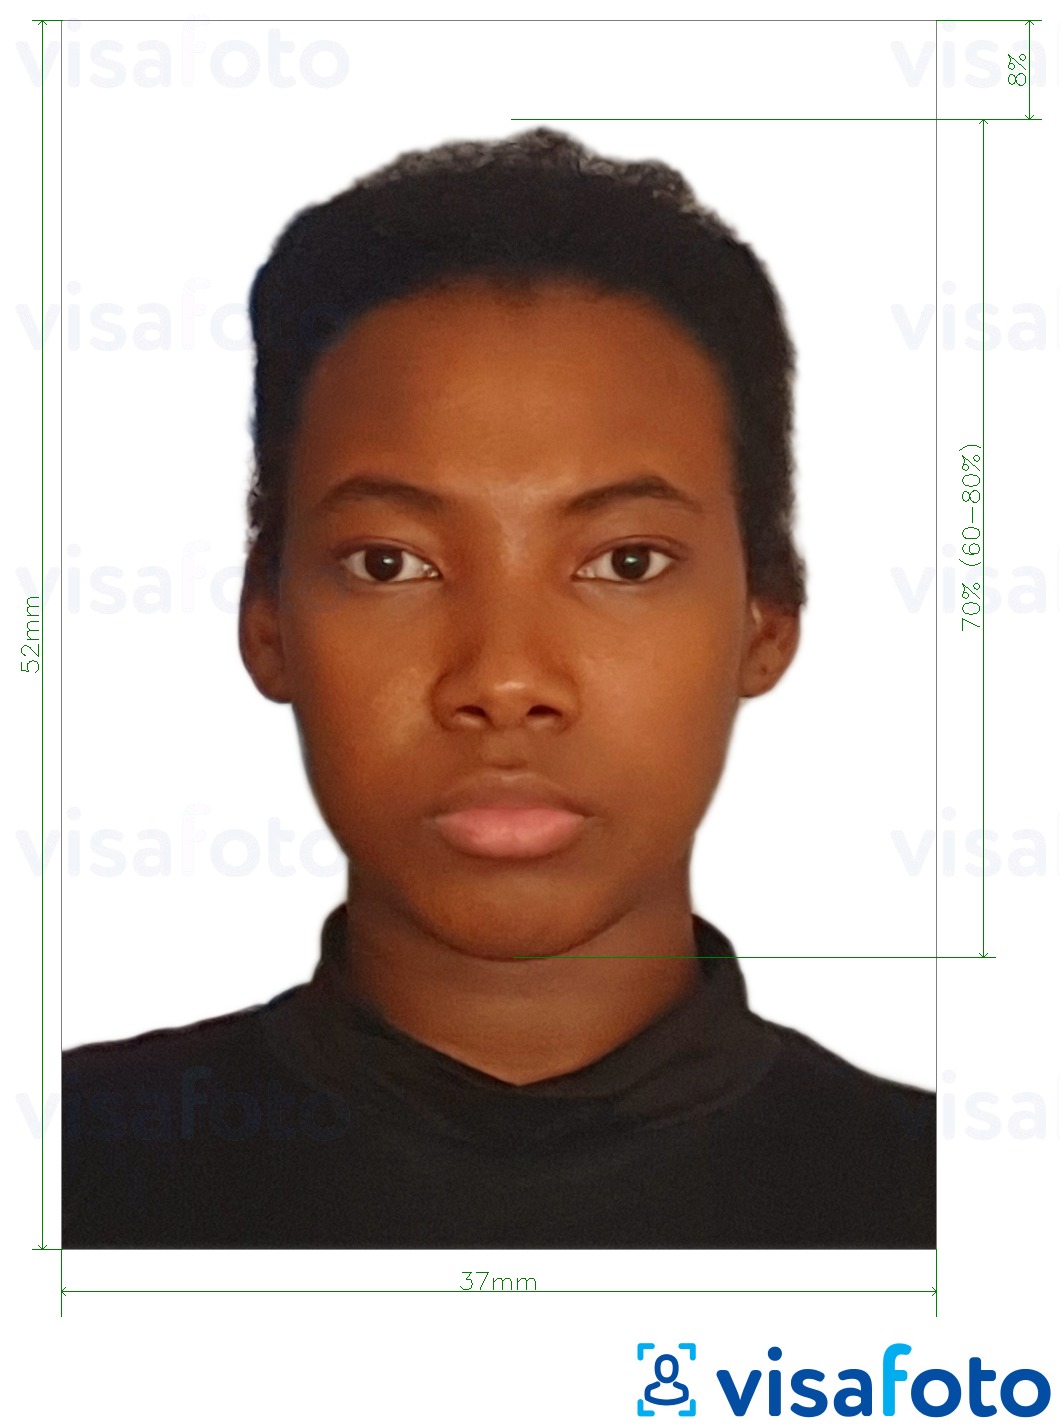 Пример за снимка за Паспорт на Намибия 37x52mm (3.7x5.2 cm) с точна спецификация за размер